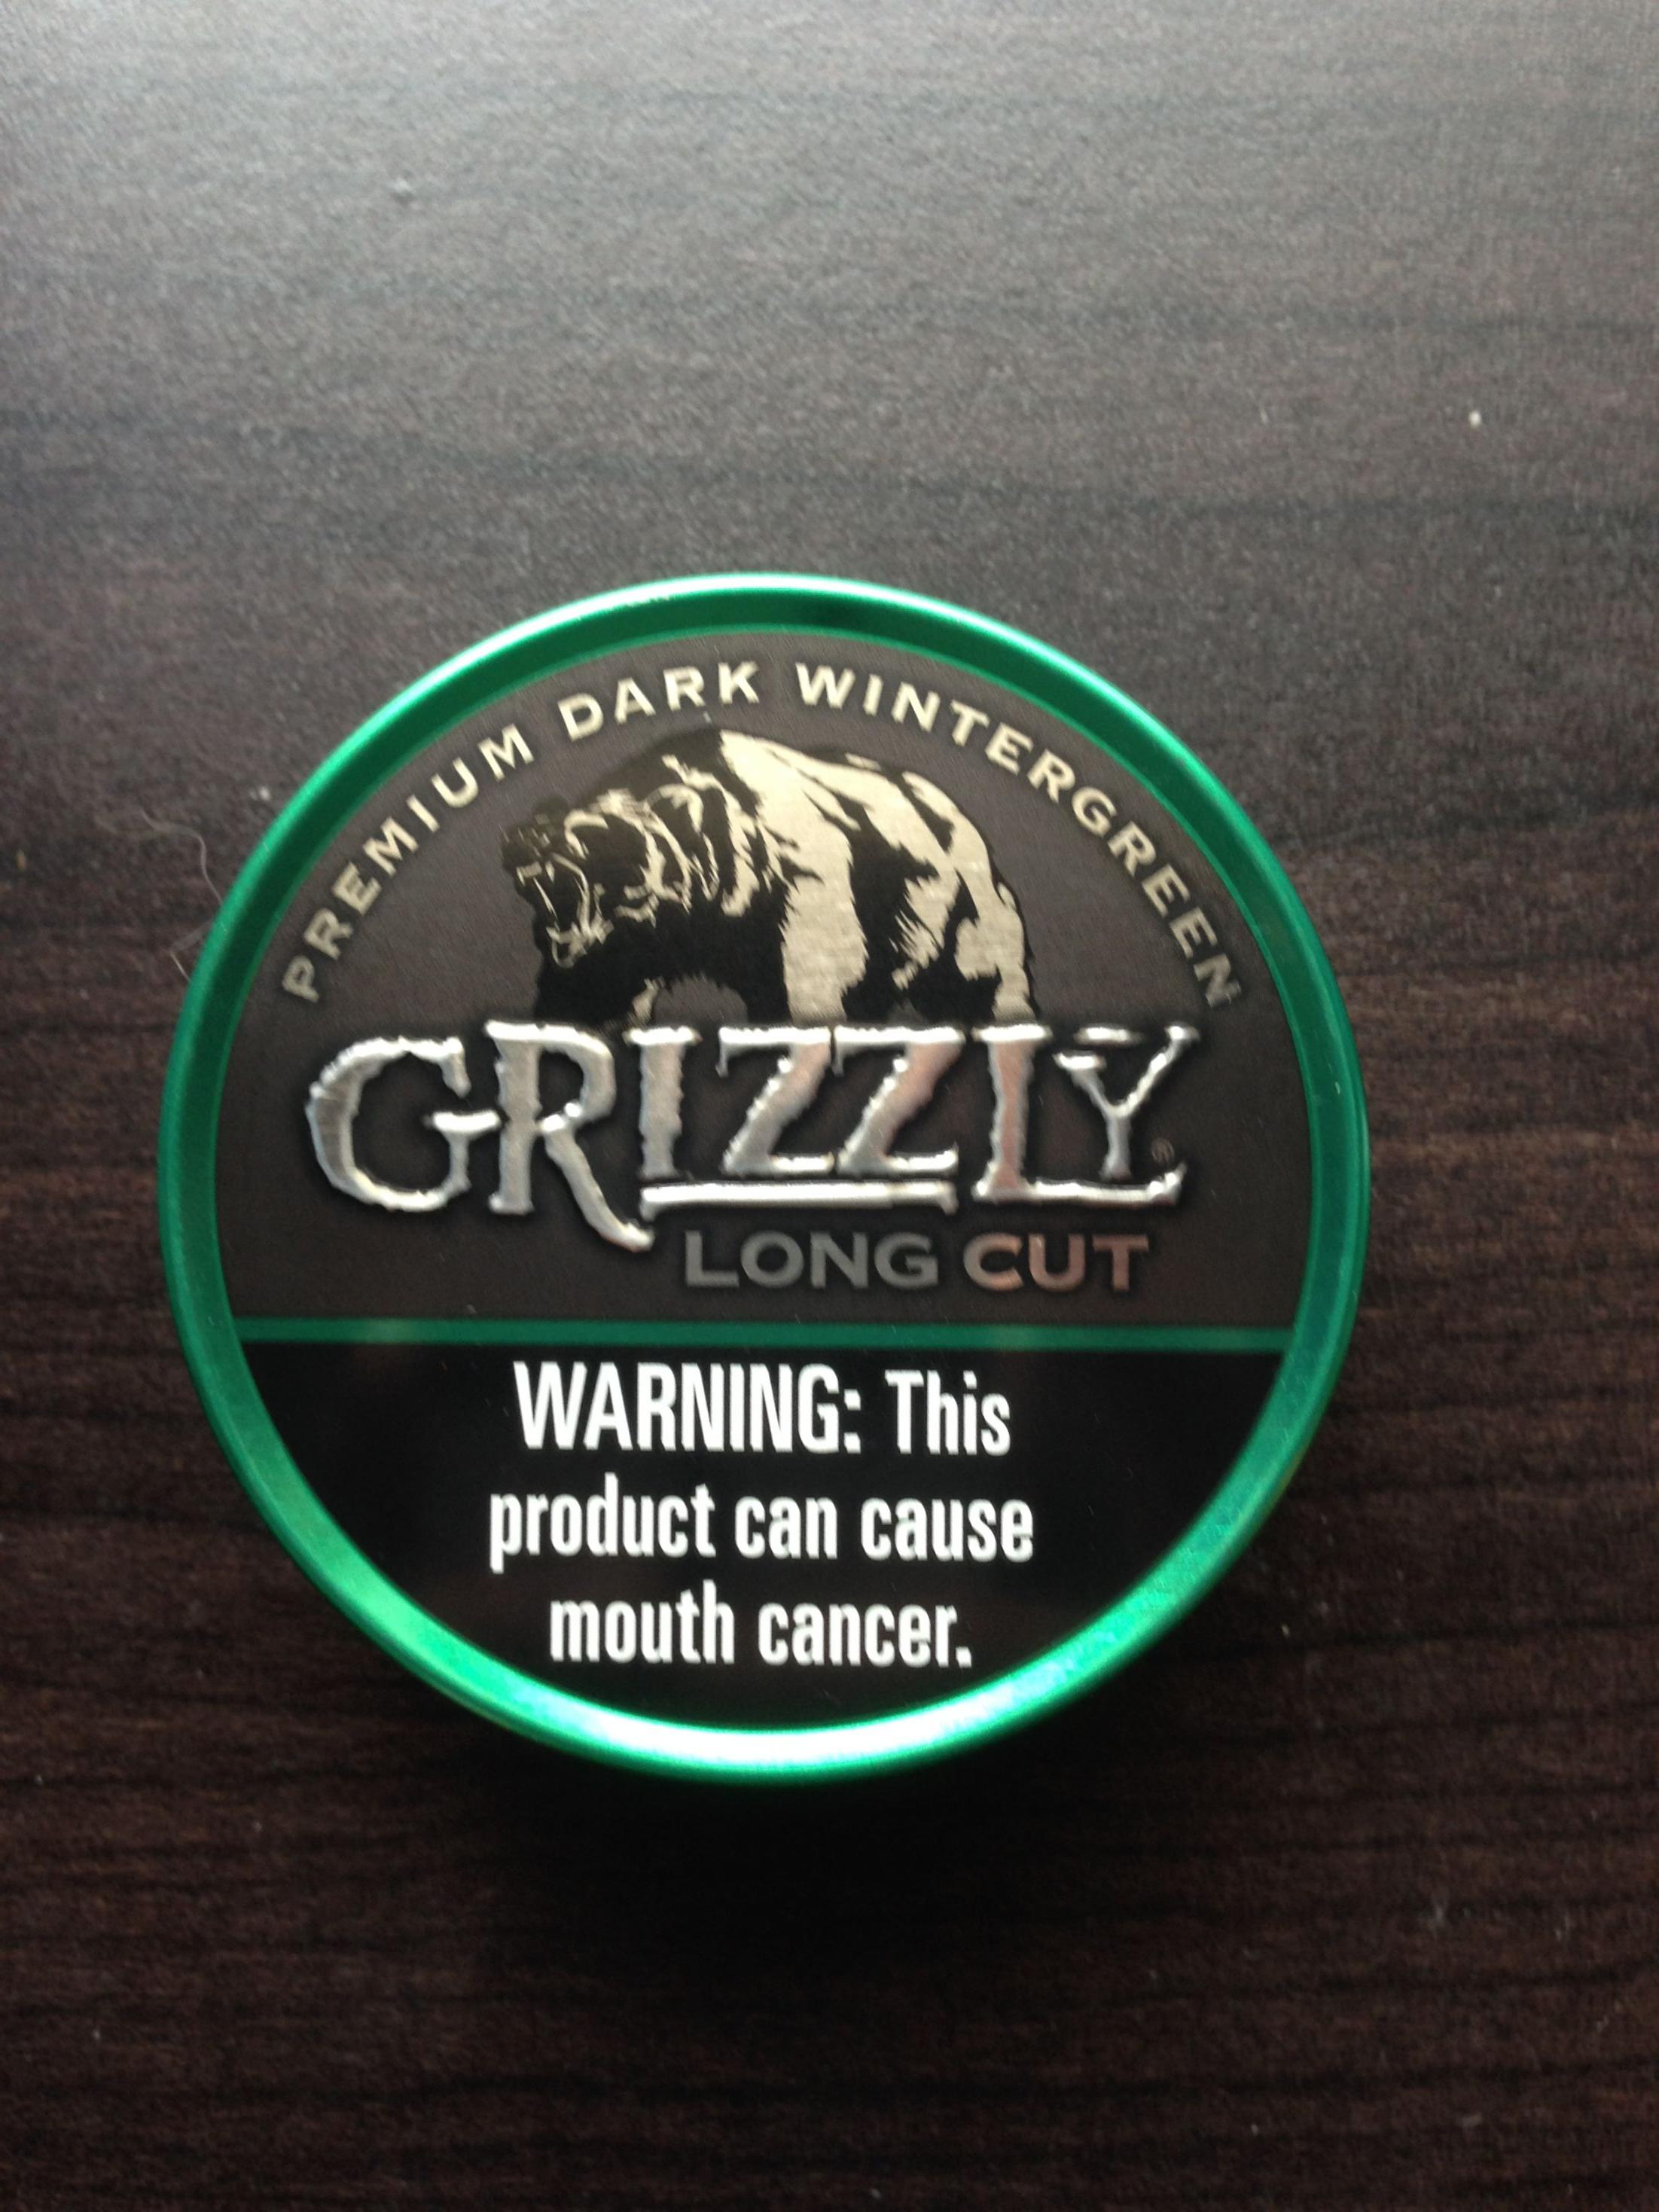 0 Deivin Daniel - Grizzly Dark Wintergreen Long Cut , HD Wallpaper & Backgrounds